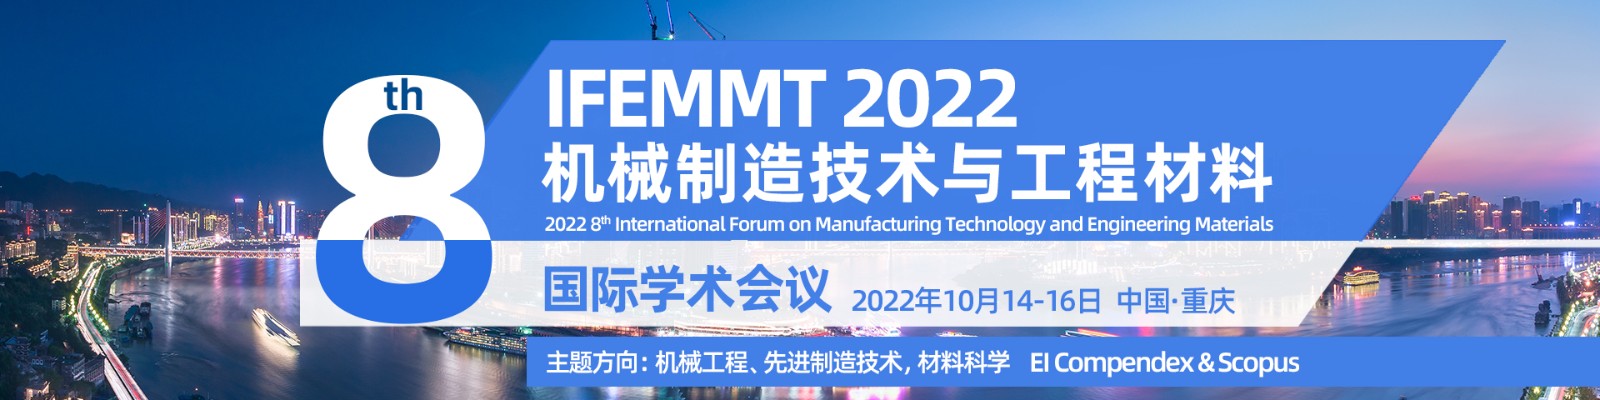 10月-重庆站-IFEMMT-艾思平台上线平台1920x480.jpg